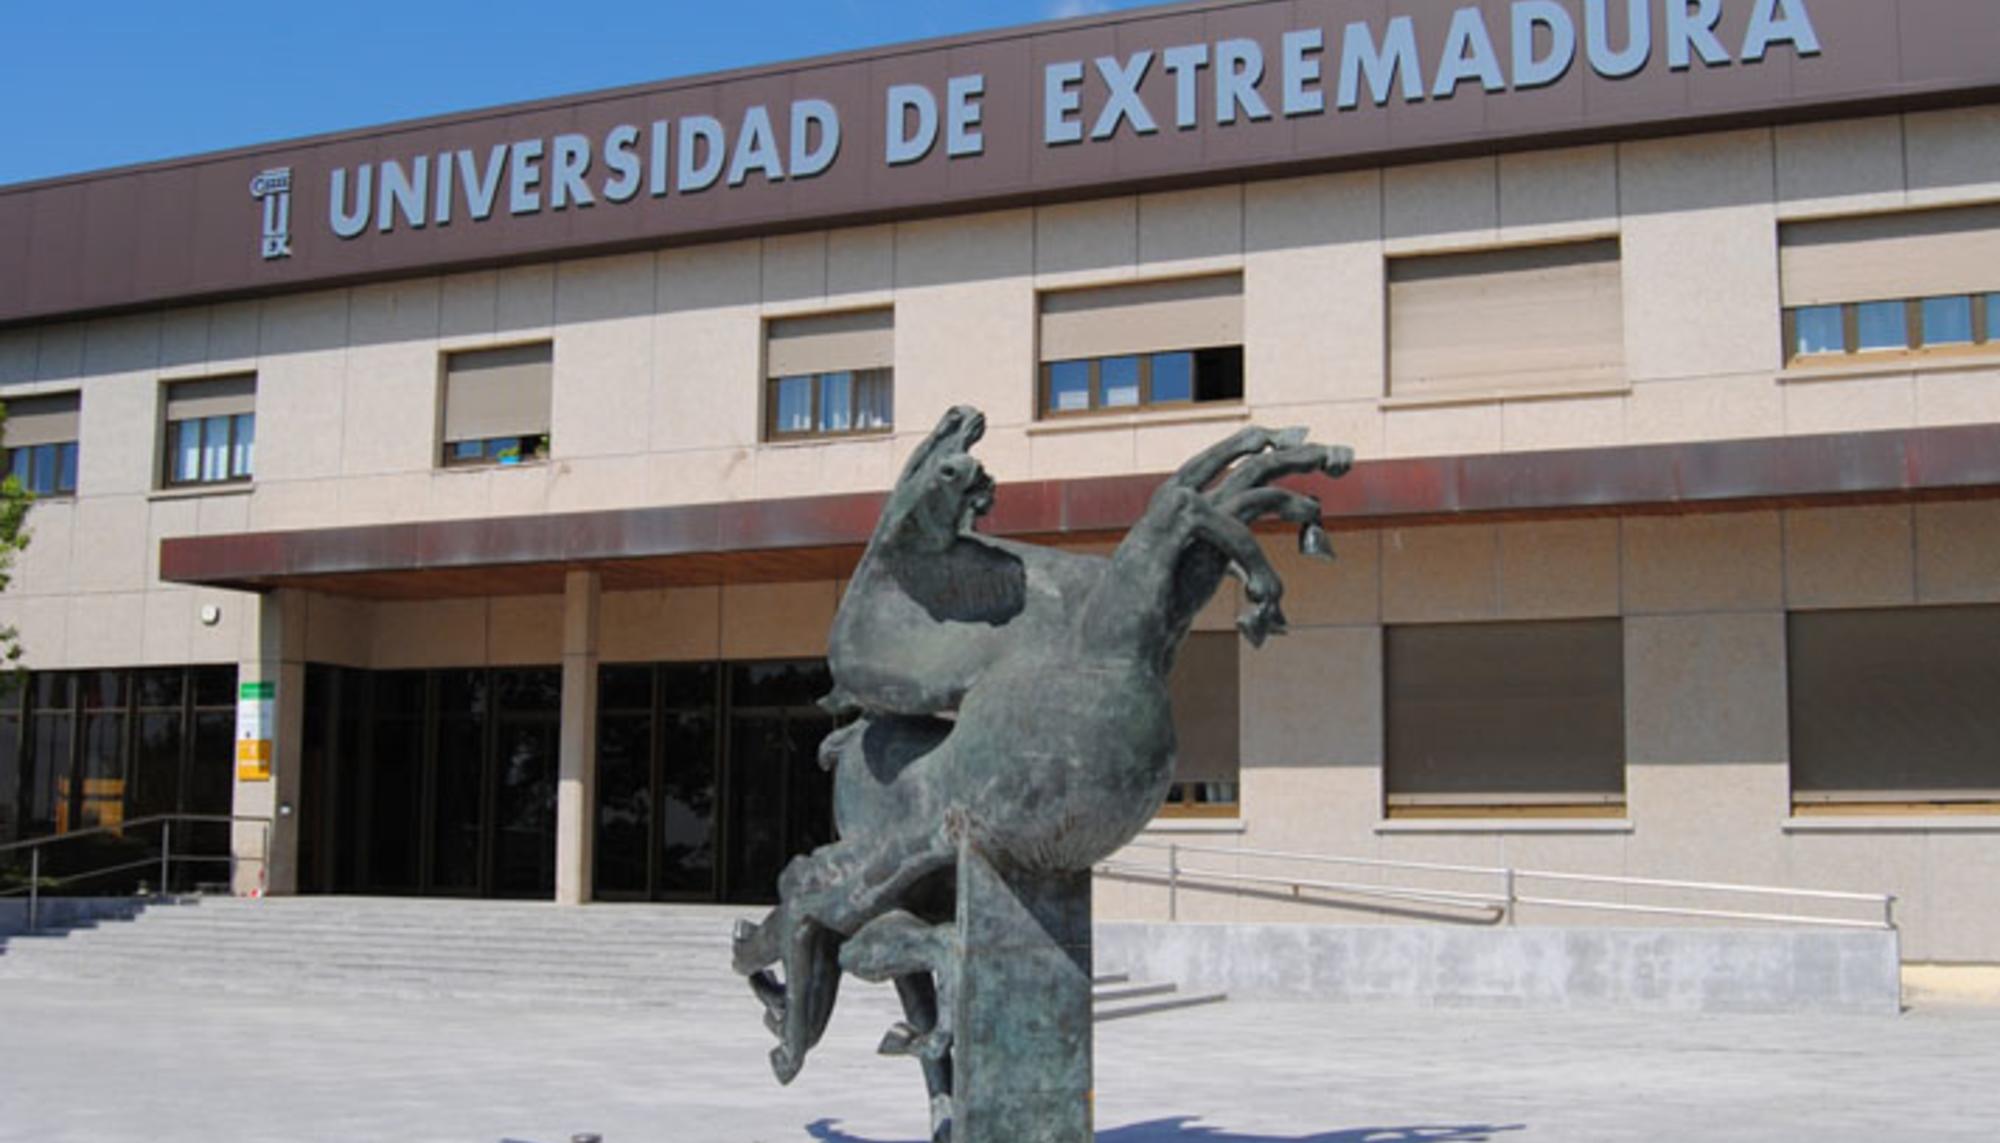 Universidad de Extremadura fachada